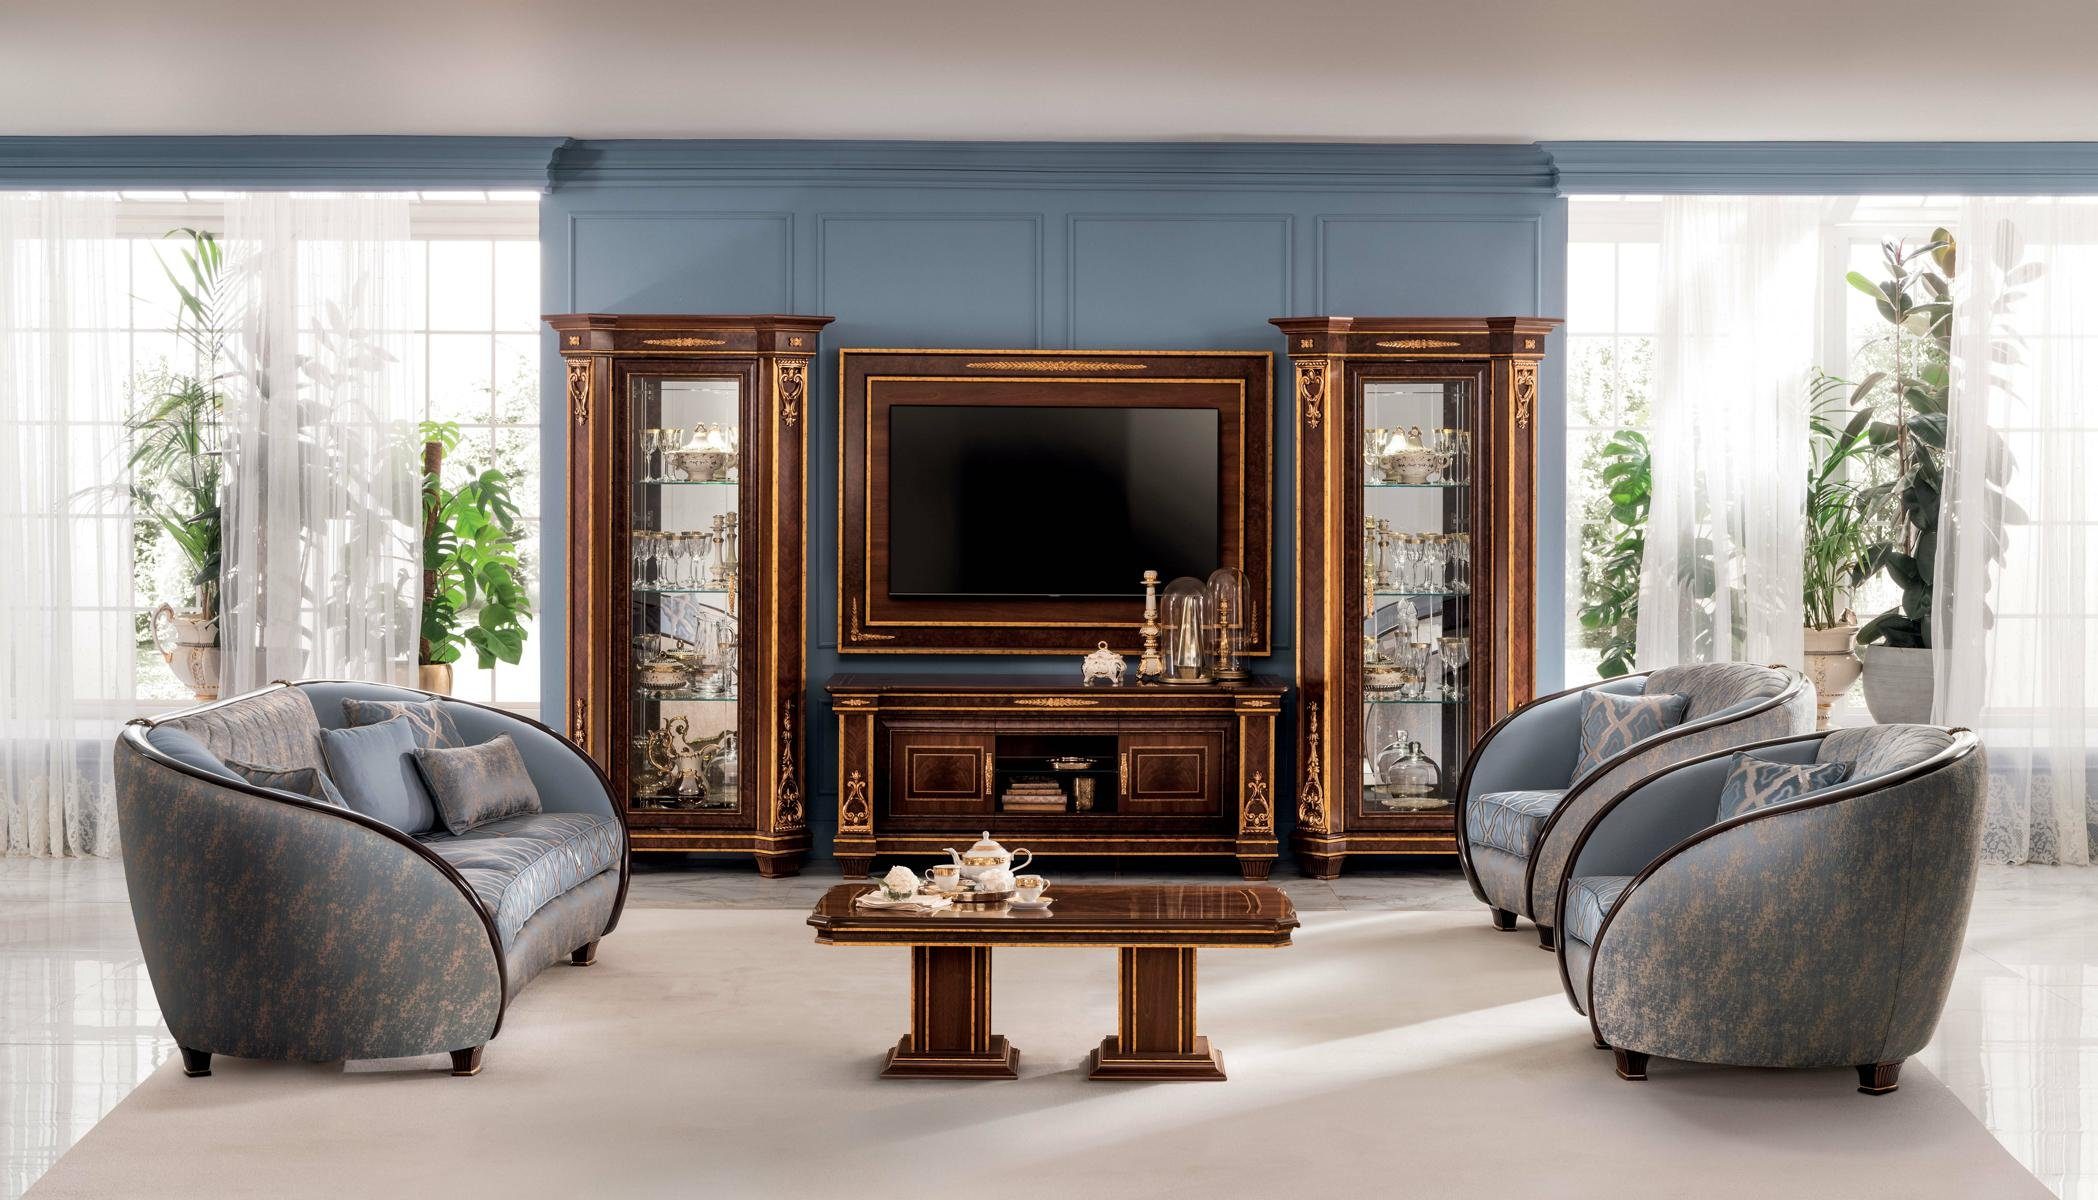 JVmoebel Wohnzimmer-Set, Luxus Klasse 2+1 Italienische Möbel Sofagarnitur Sofa Couch arredoclassic™ Neu